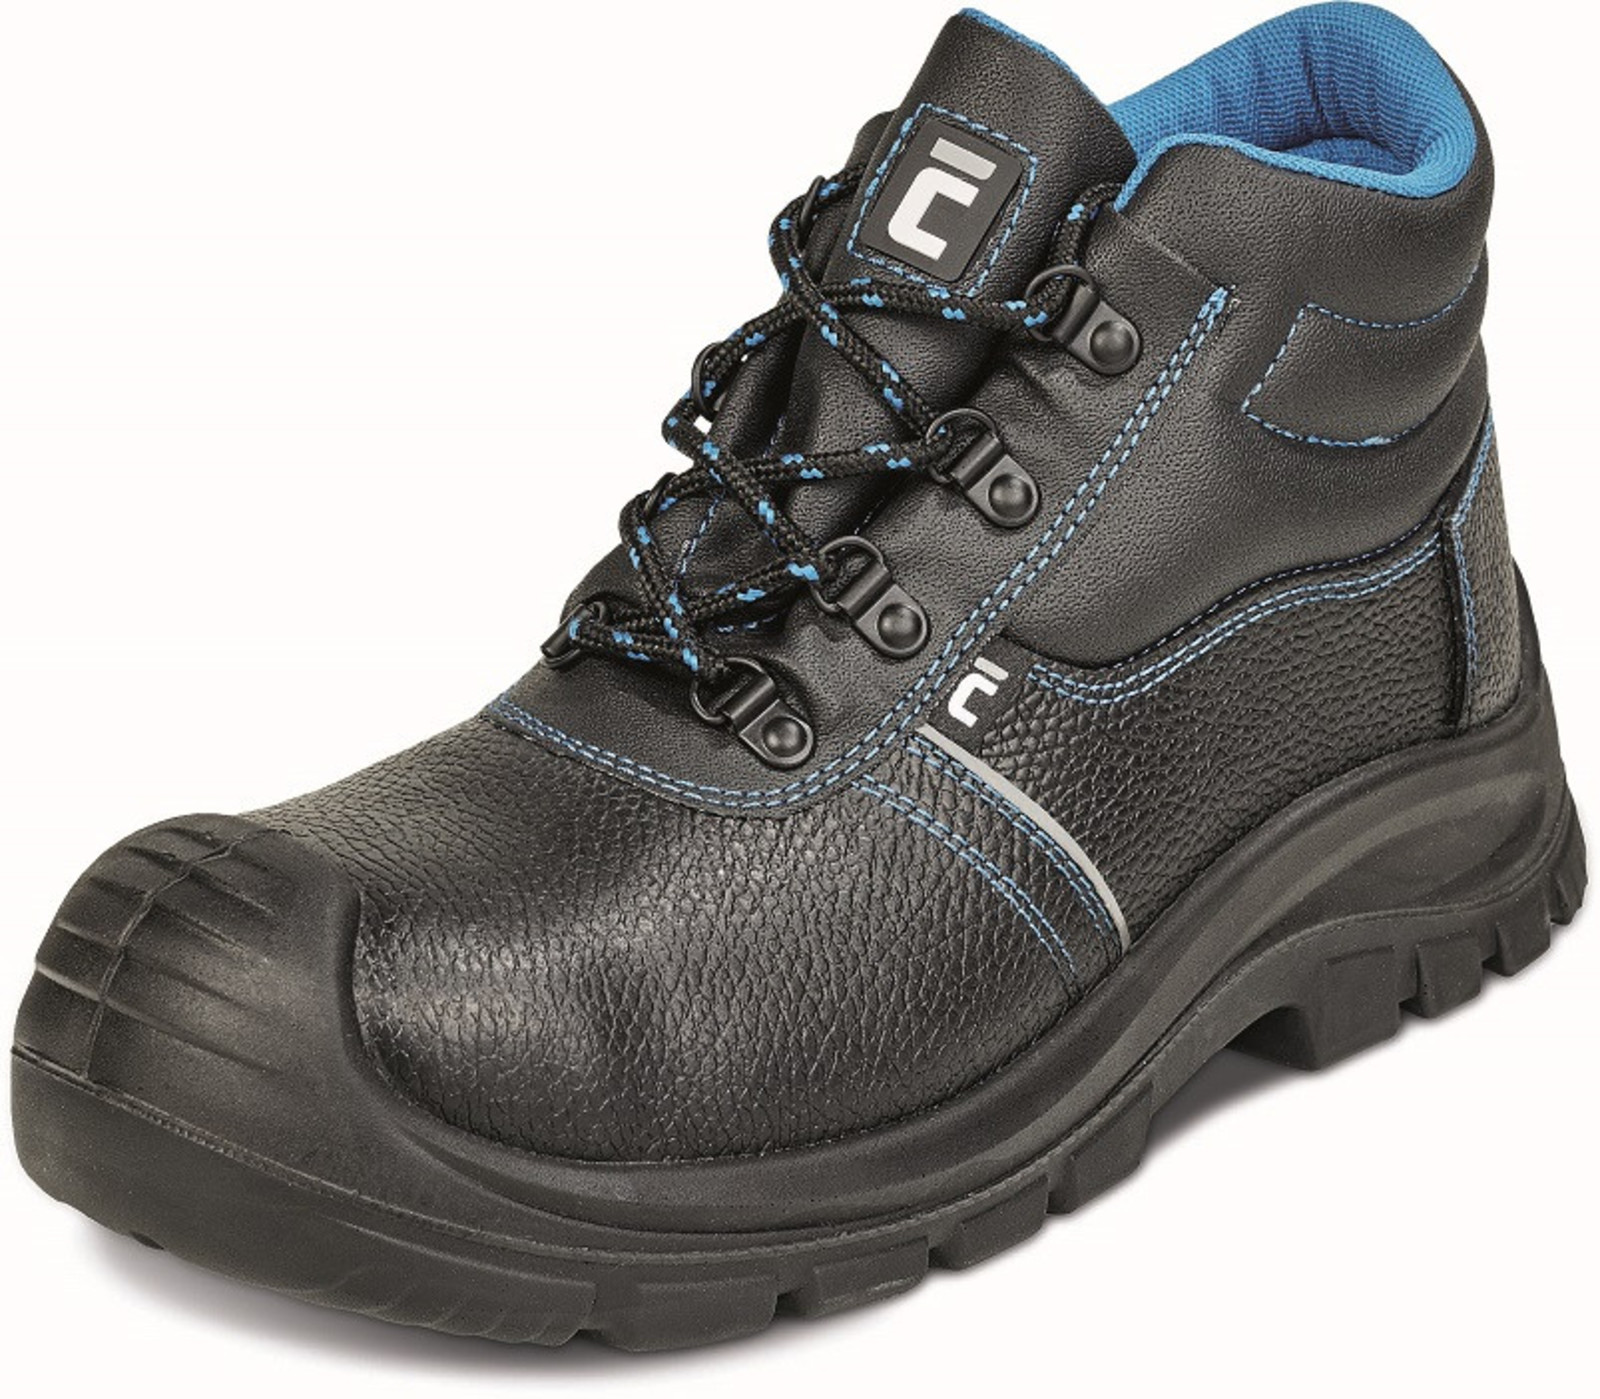 Bezpečnostná obuv Raven XT S3 - veľkosť: 37, farba: čierna